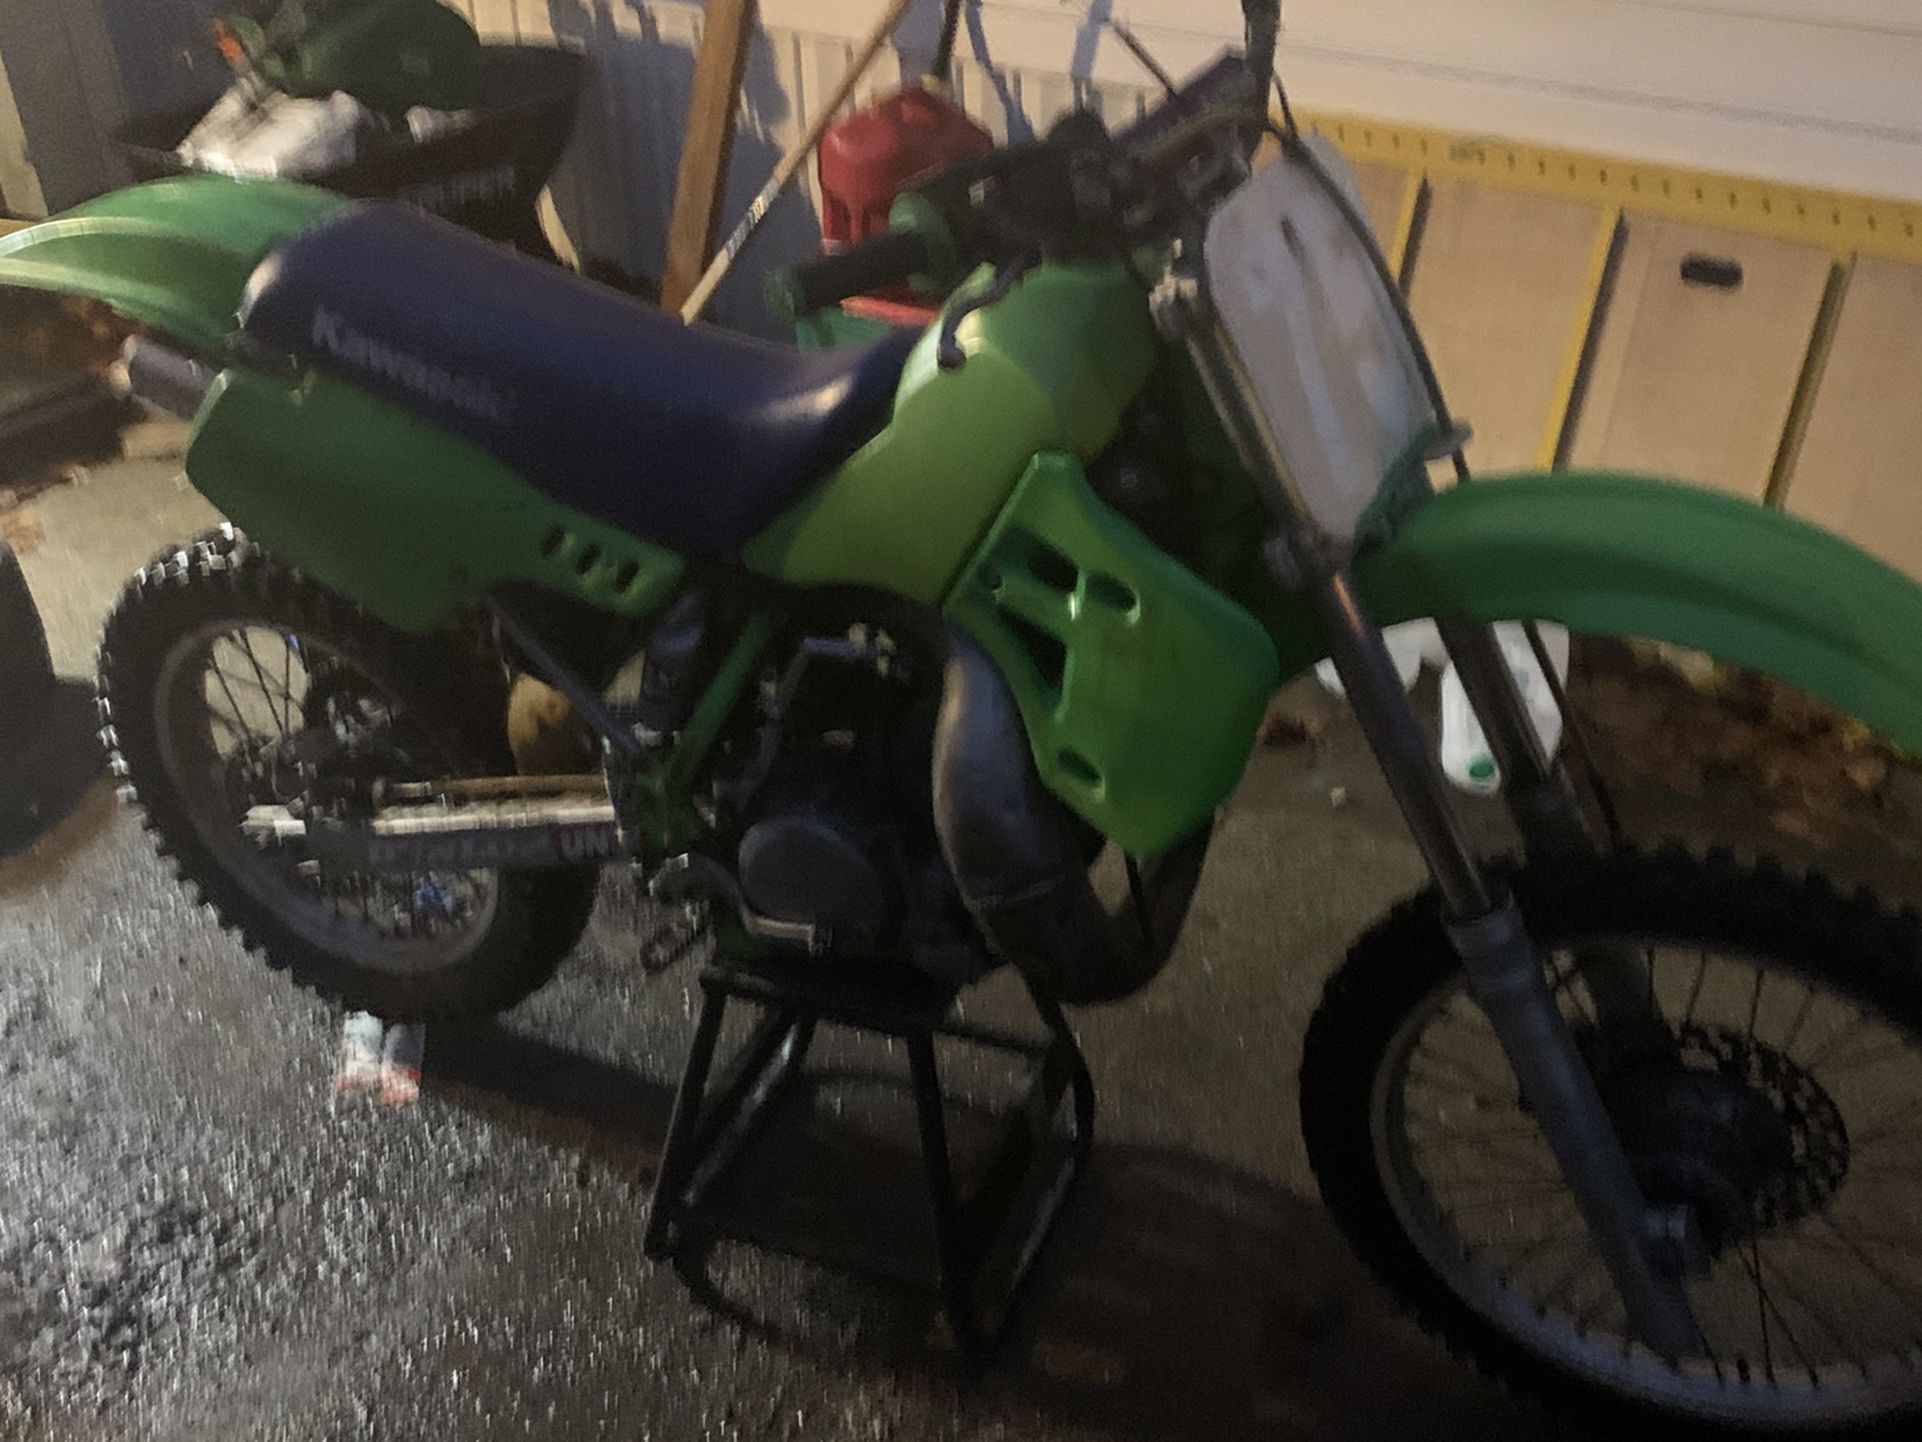 1988 Kawasaki KX 250